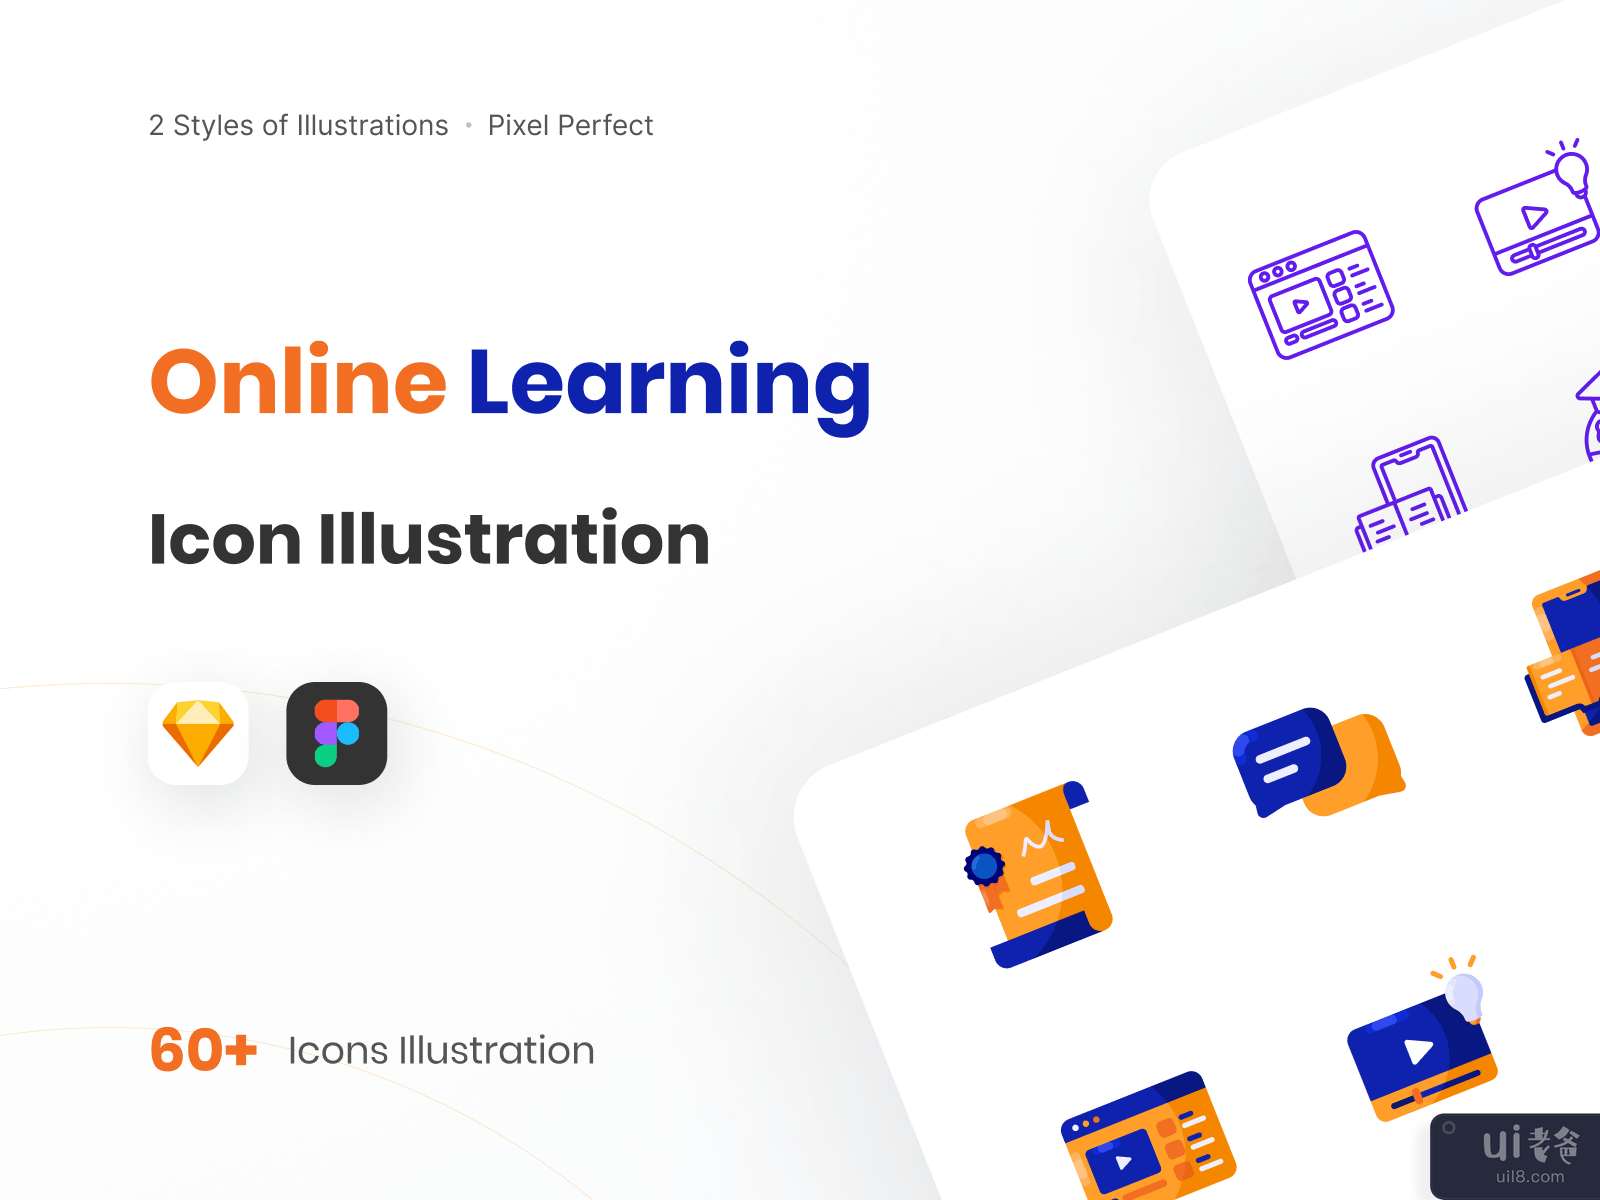 在线学习图标说明-教育图标(Online Learning Icon Illustration - Education Icon)插图